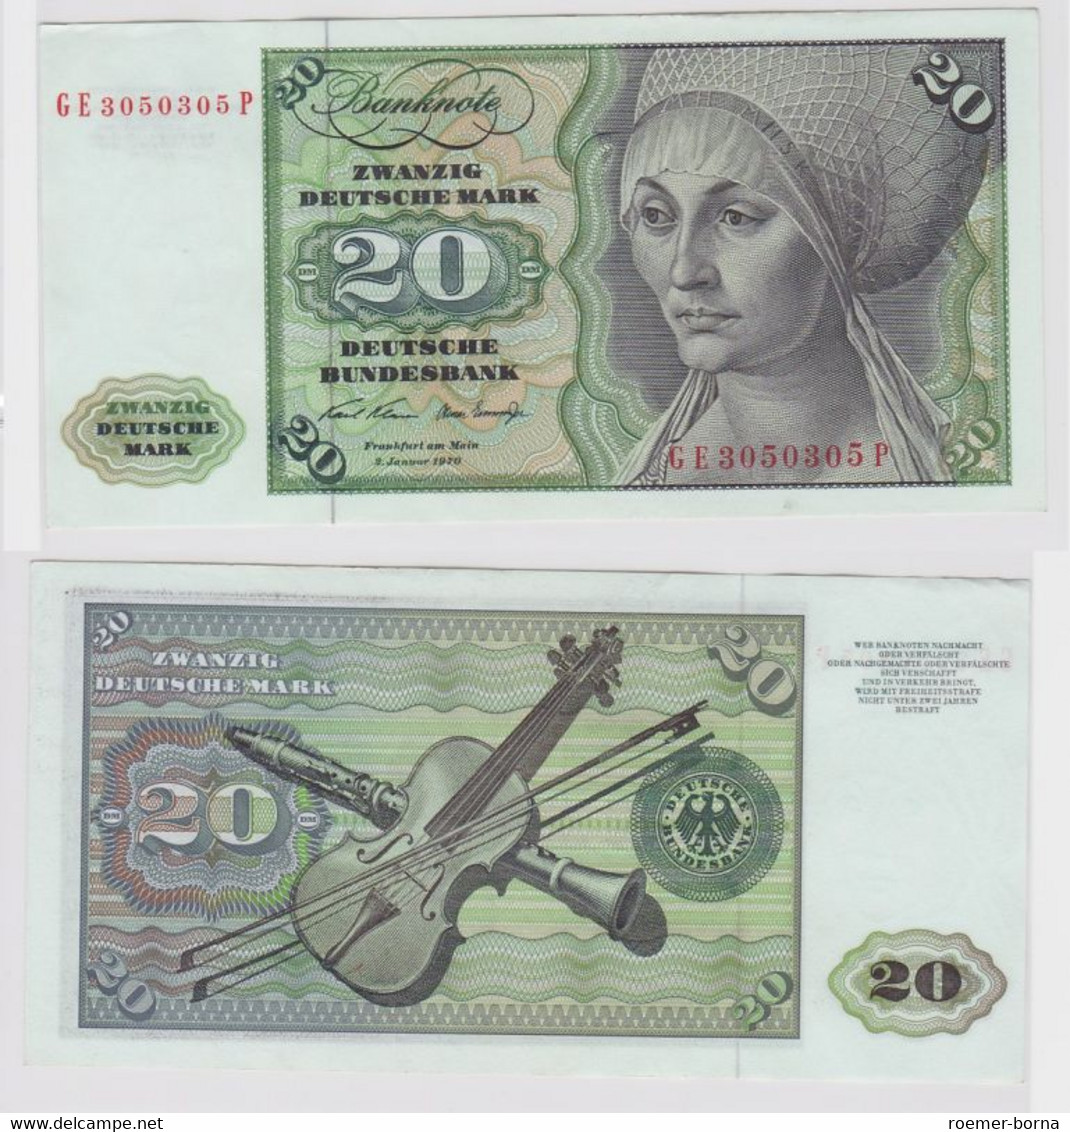 T148242 Banknote 20 DM Deutsche Mark Ro. 271b Schein 2.Jan. 1970 KN GE 3050305 P - 20 Deutsche Mark